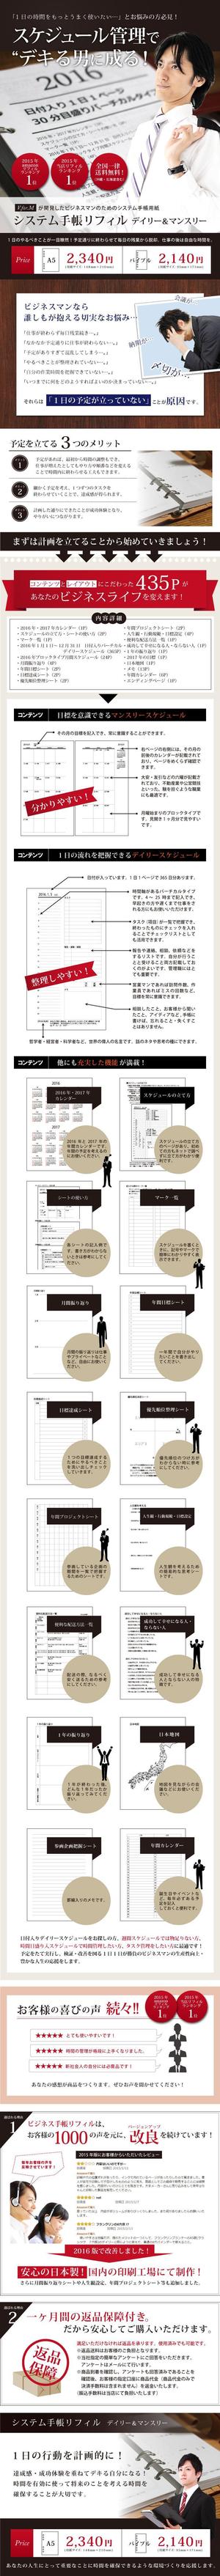 フルカワ (saisaki)さんのビジネスマン向けシステム手帳用紙のランディングページへの提案